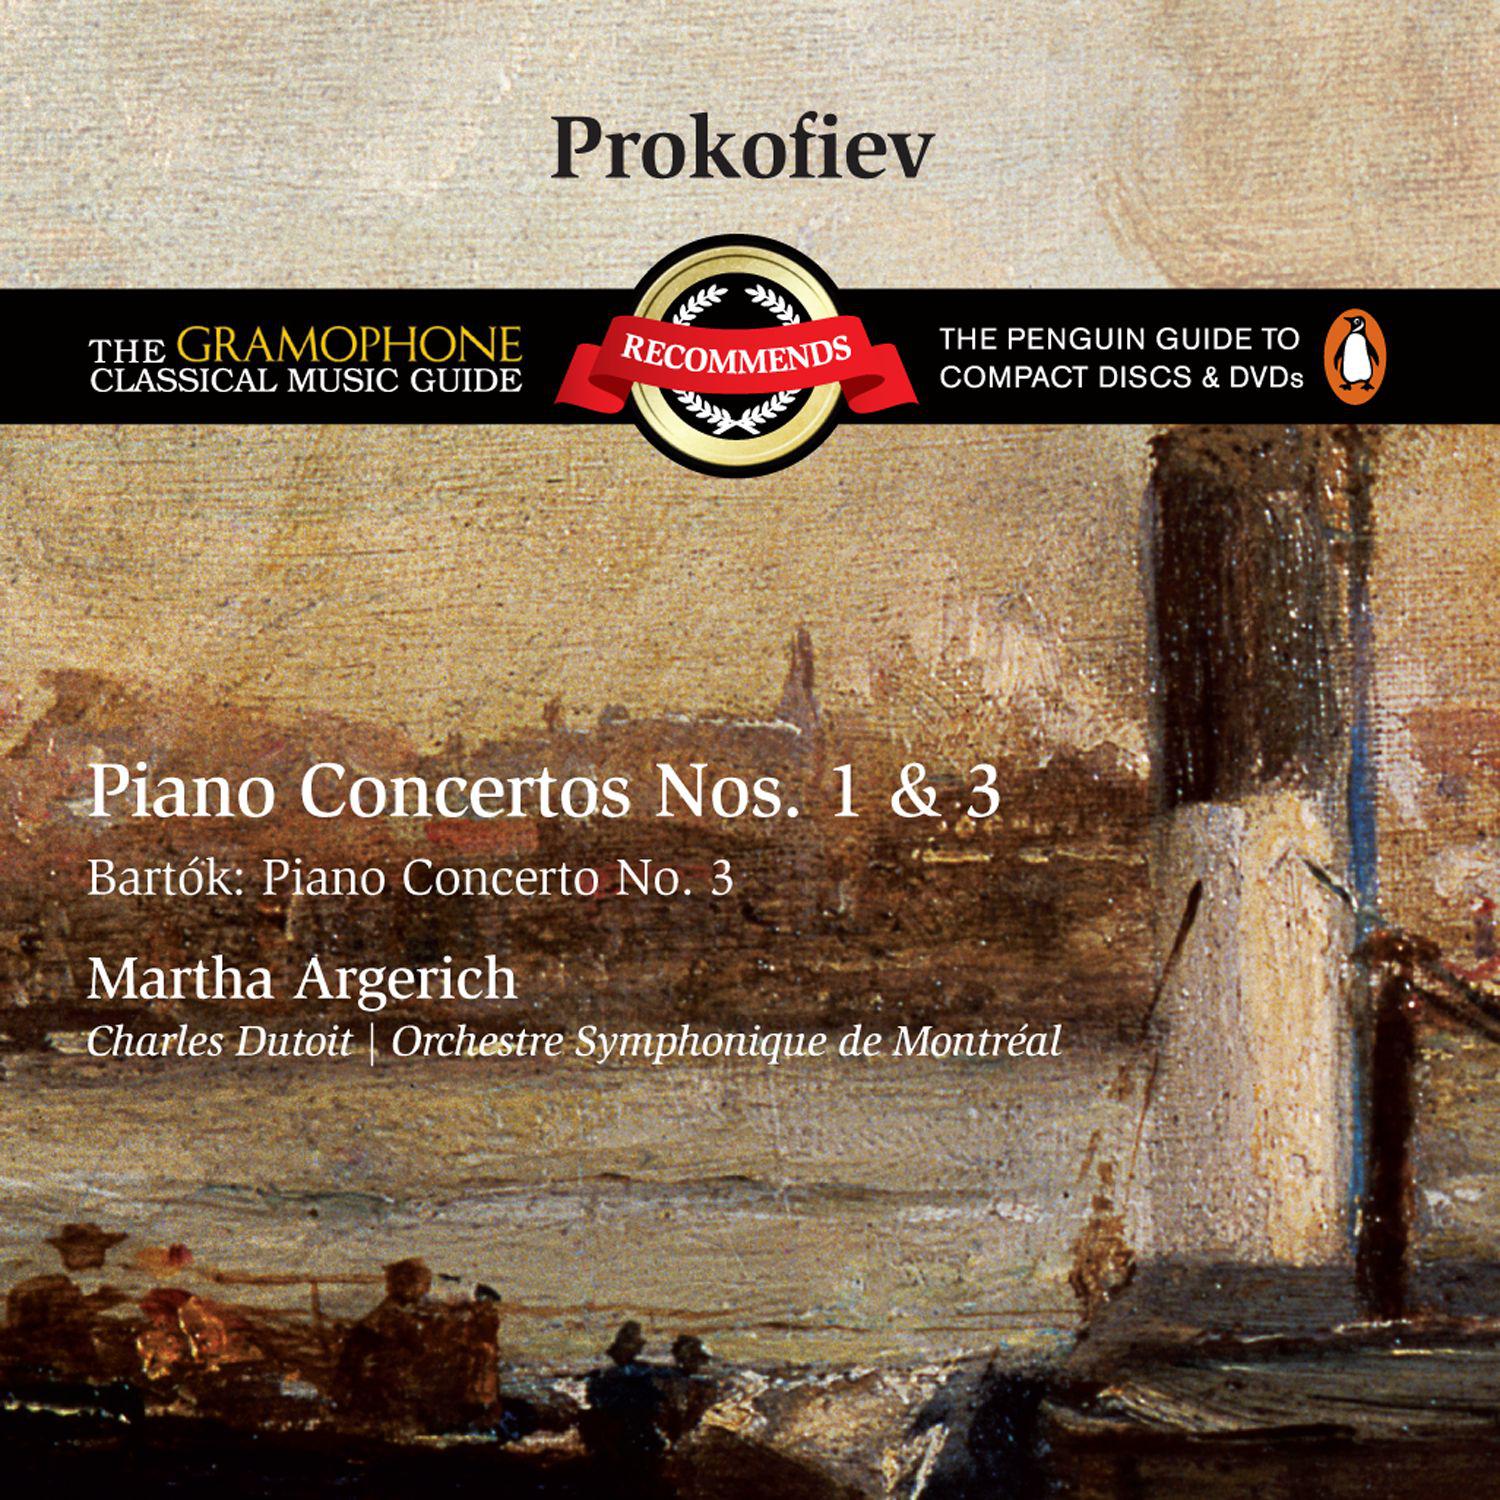 Piano Concerto No. 3 in C, Op.26: I. Andante - Allegro